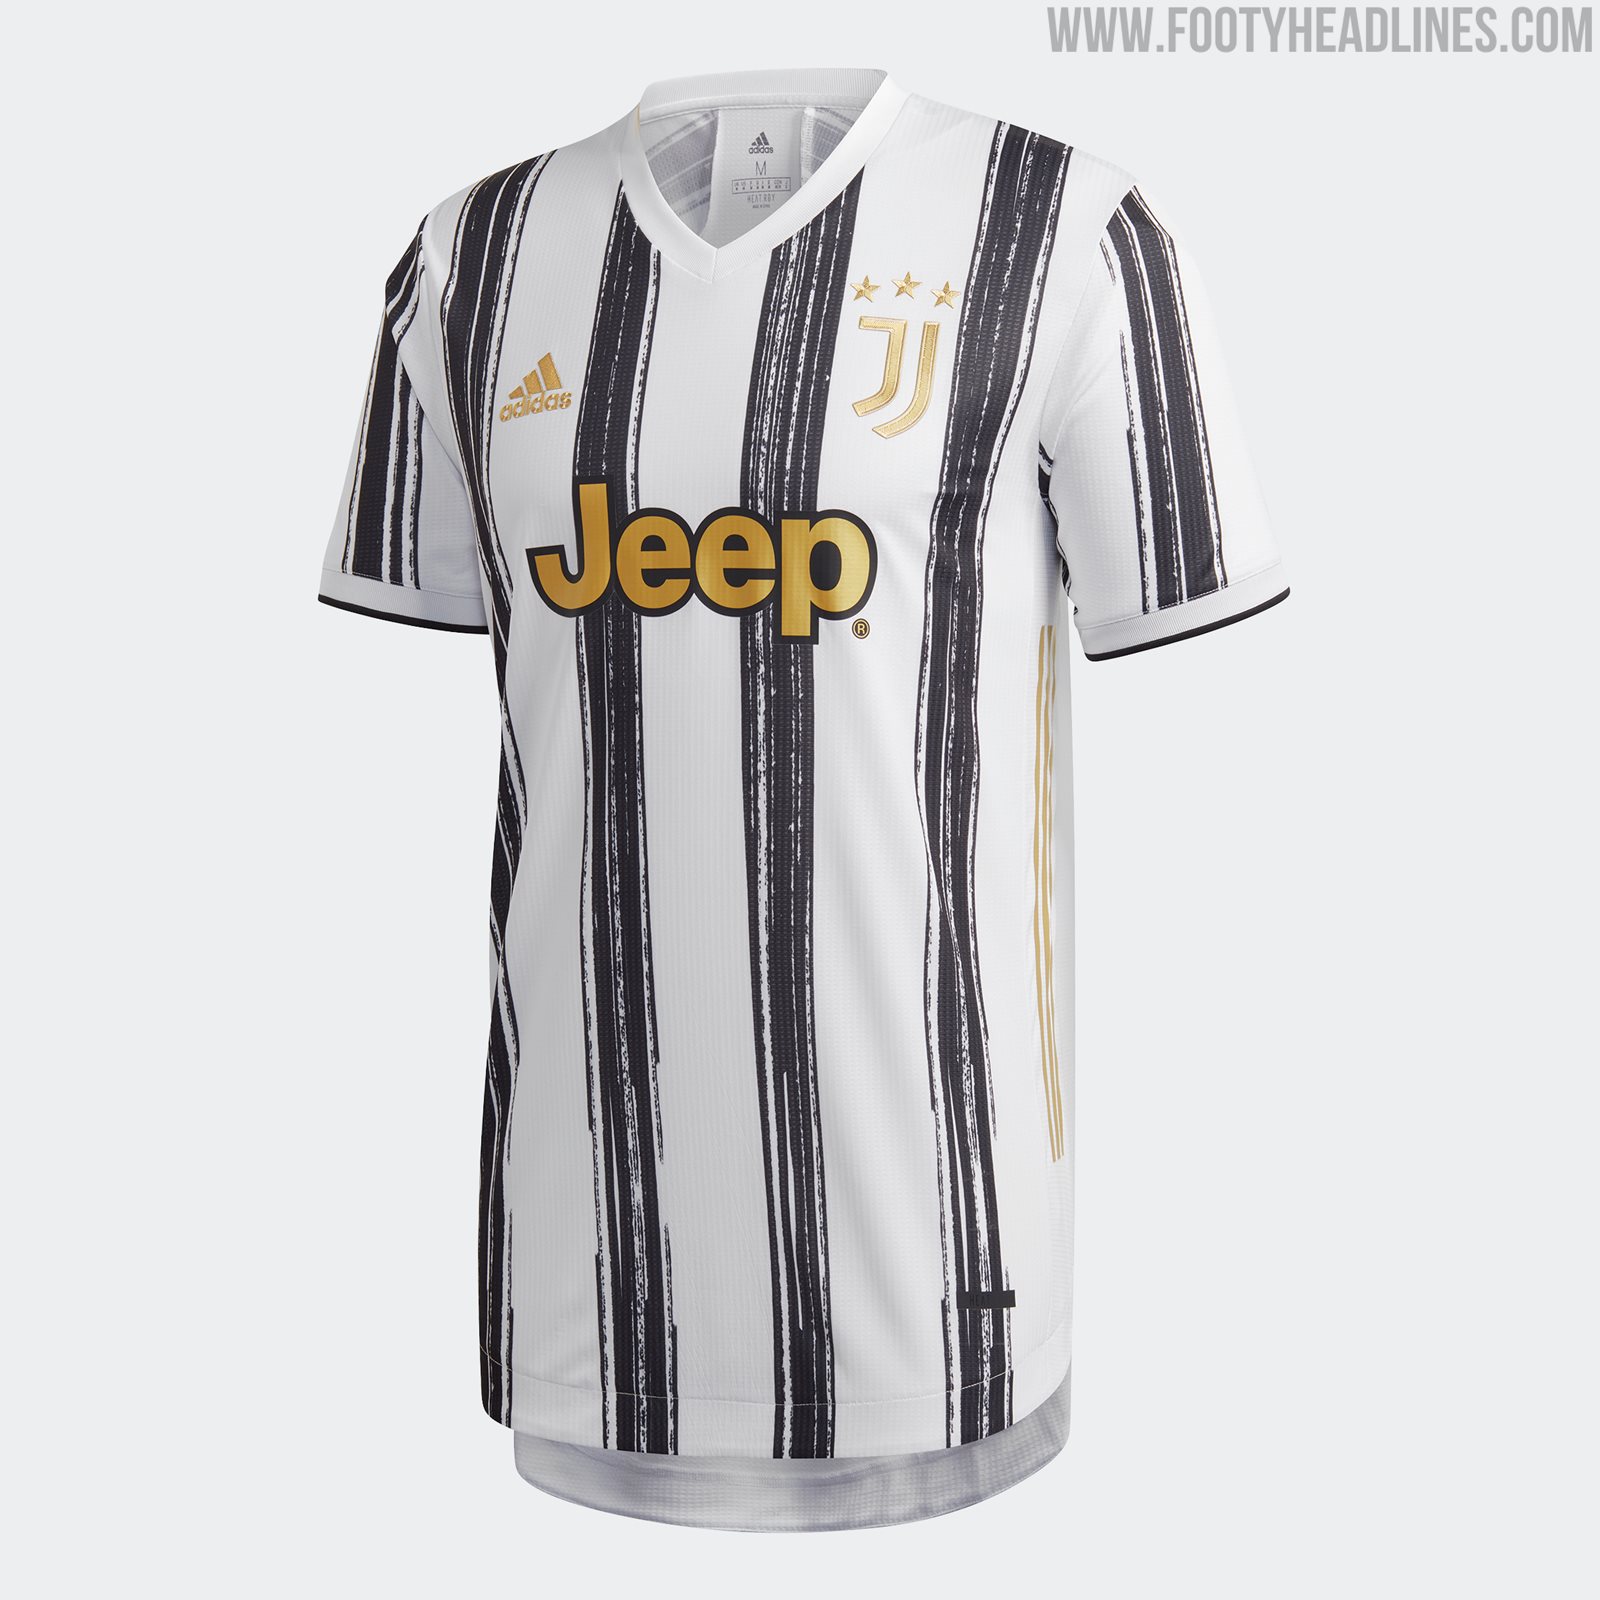 Juventus 2020-21 Home Kit - Footy